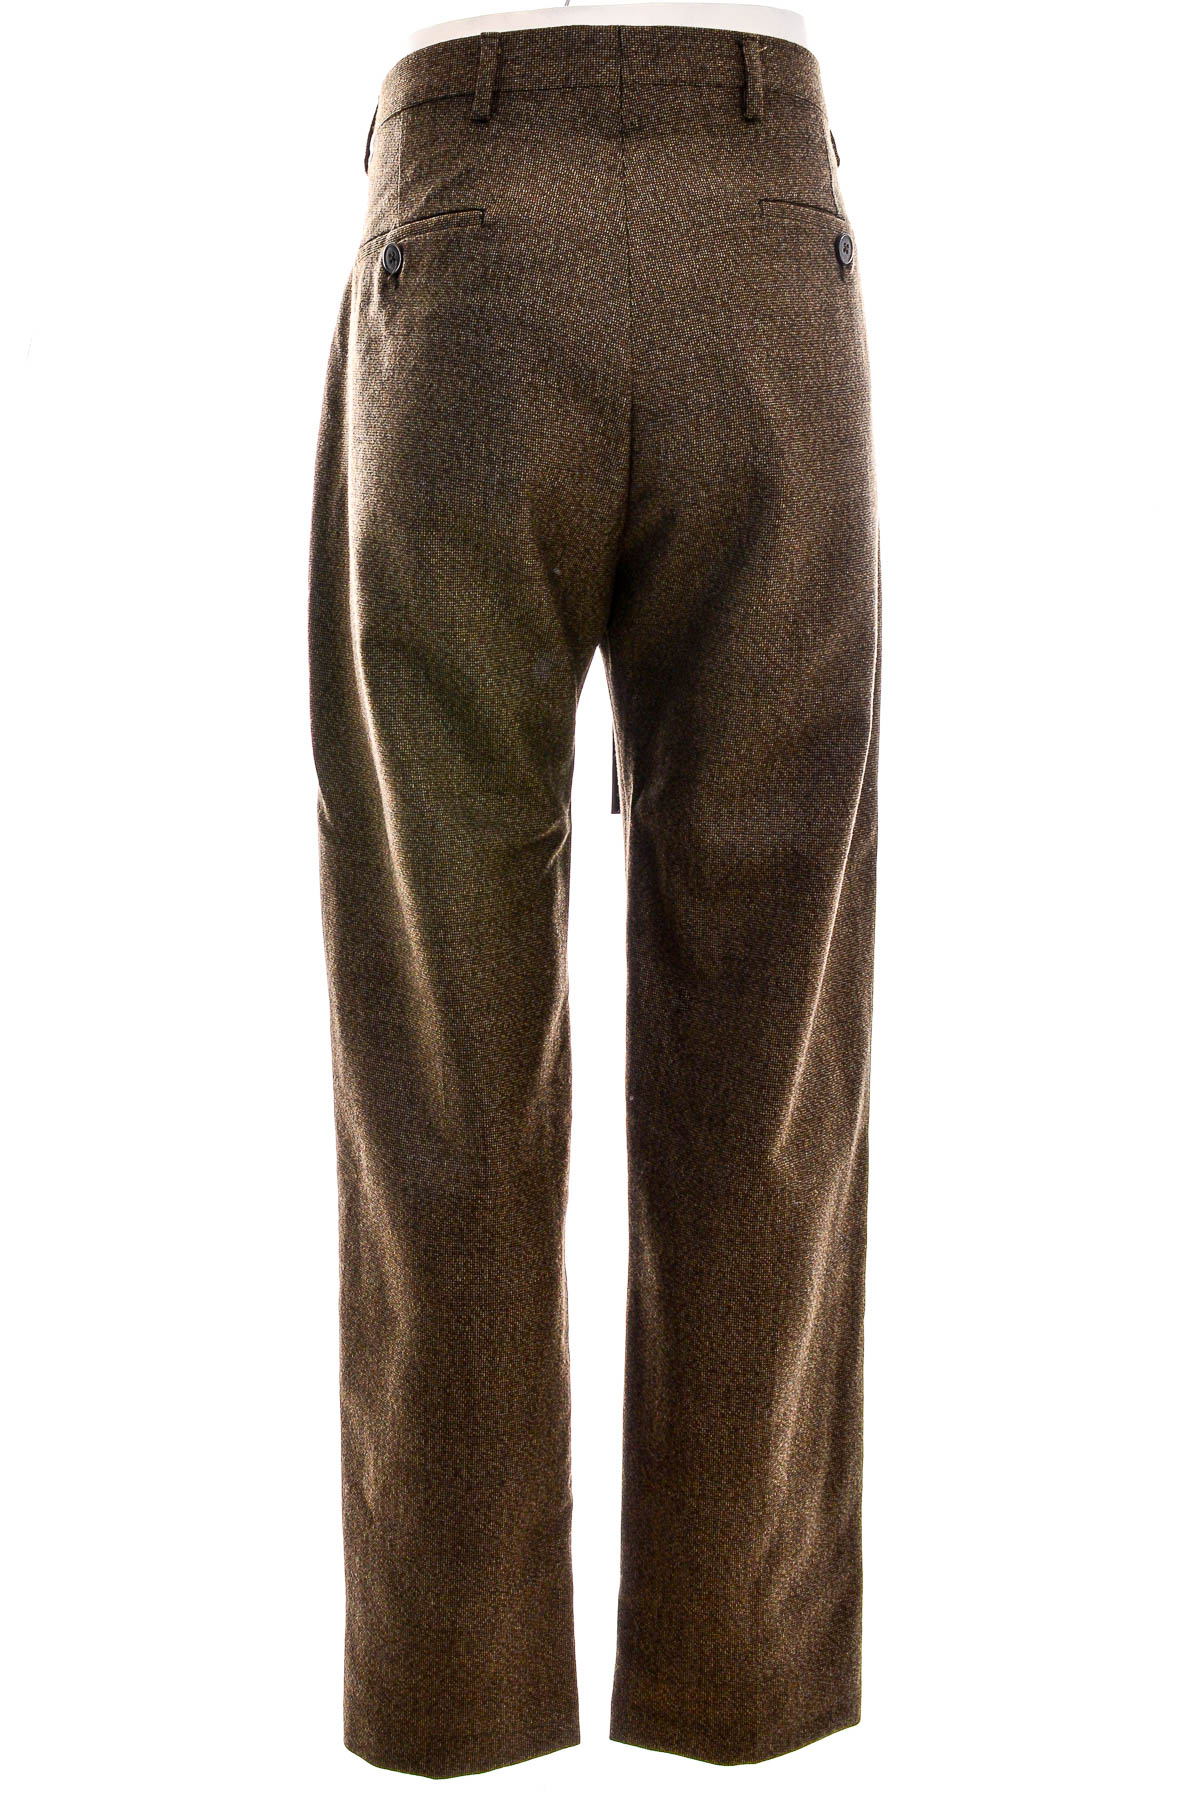 Pantalon pentru bărbați - BRIAN DALES - 1